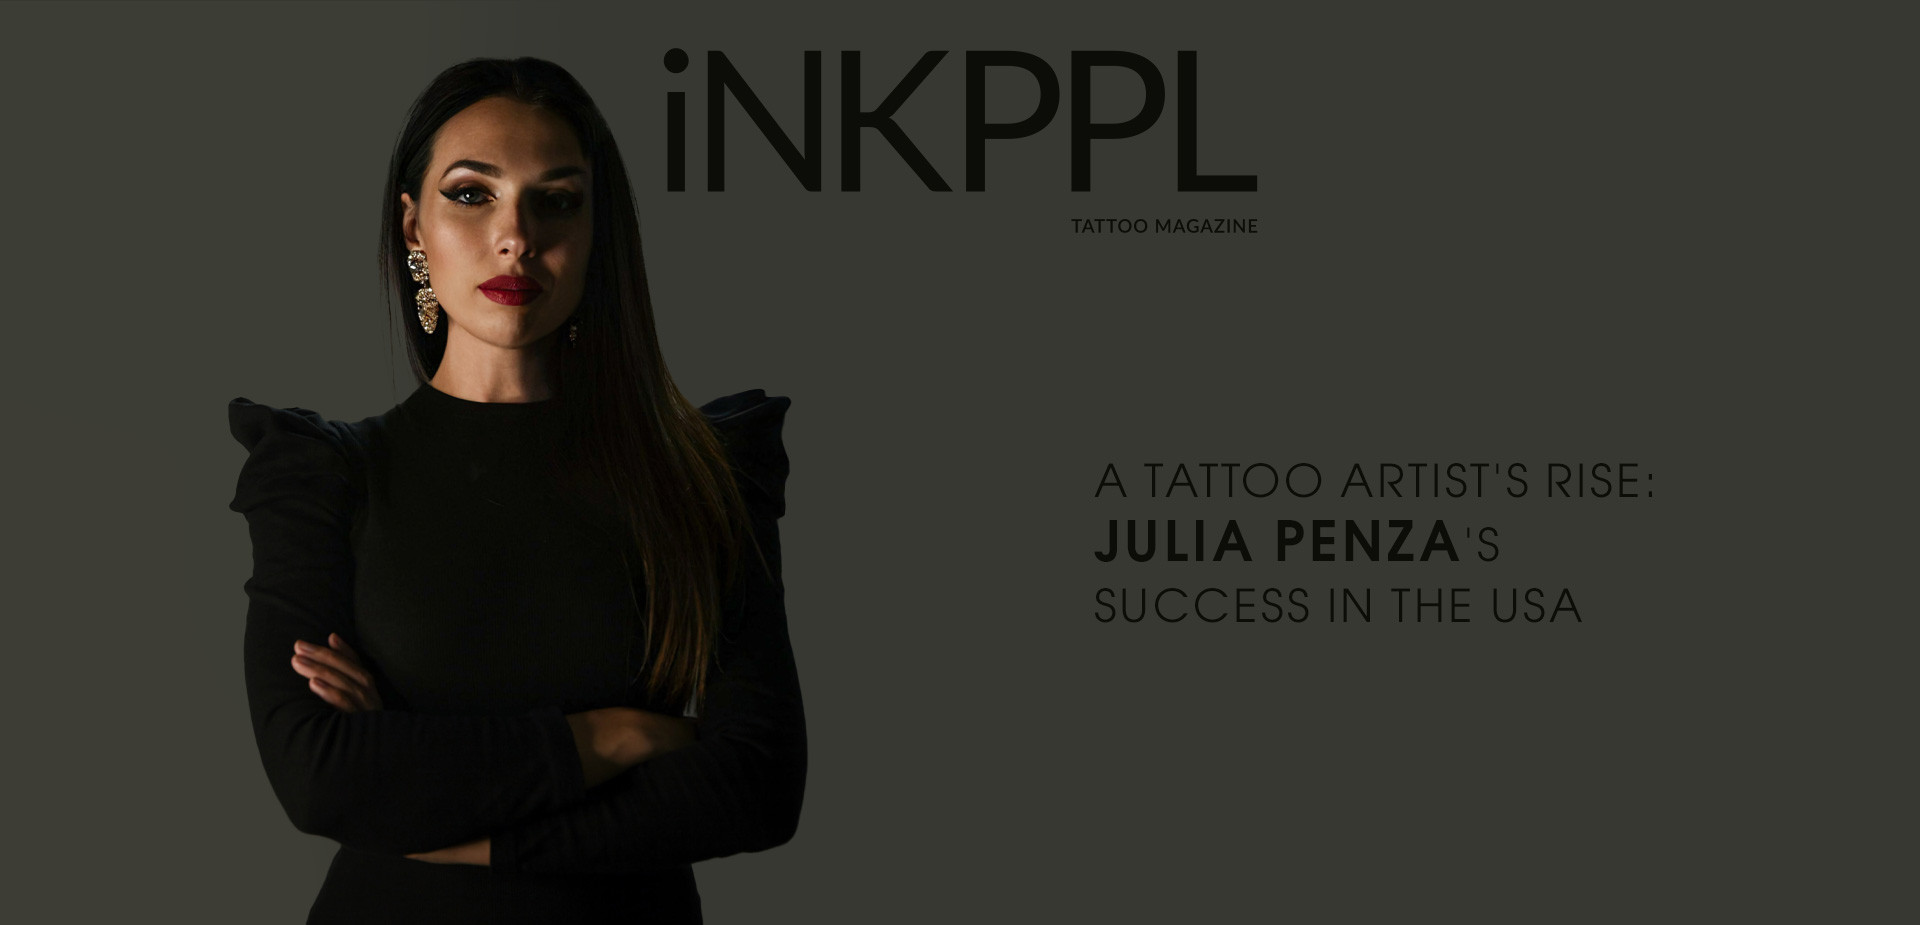 A Tattoo Artist's Rise: Julia Penza's Success in the USA